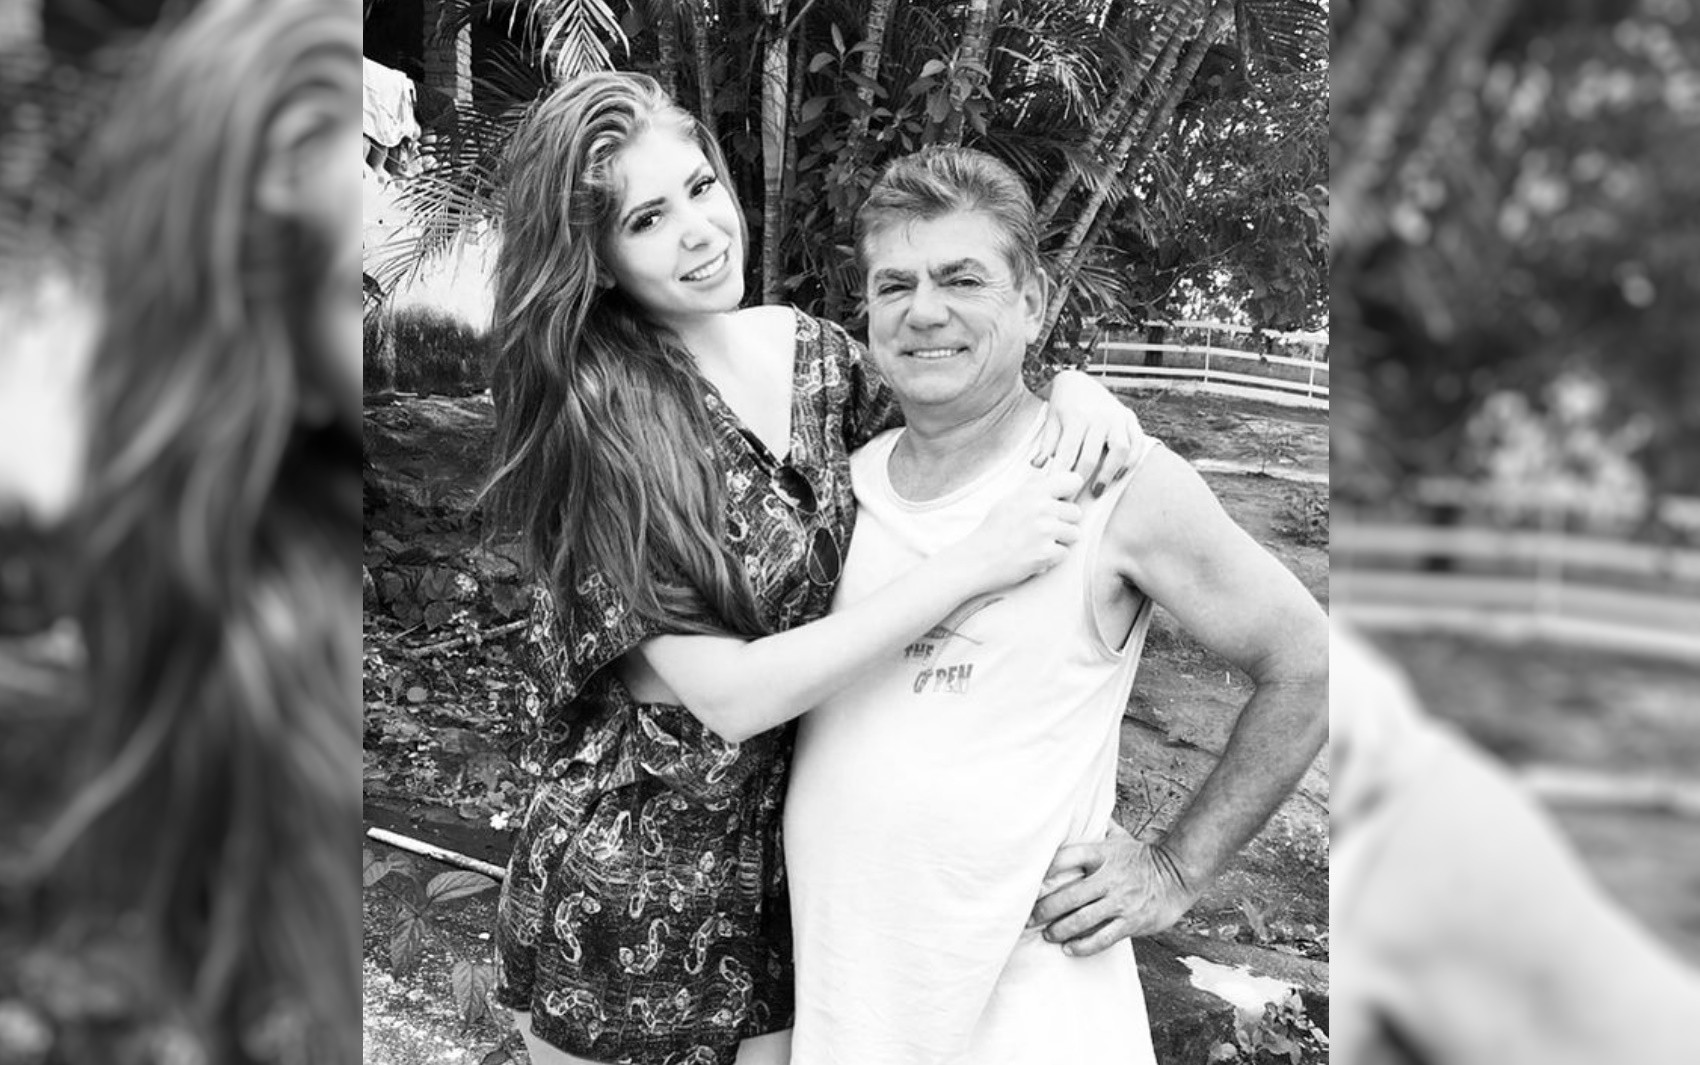 Pai da ex-BBB Amanda Gontijo morre em acidente de trânsito em Goiás